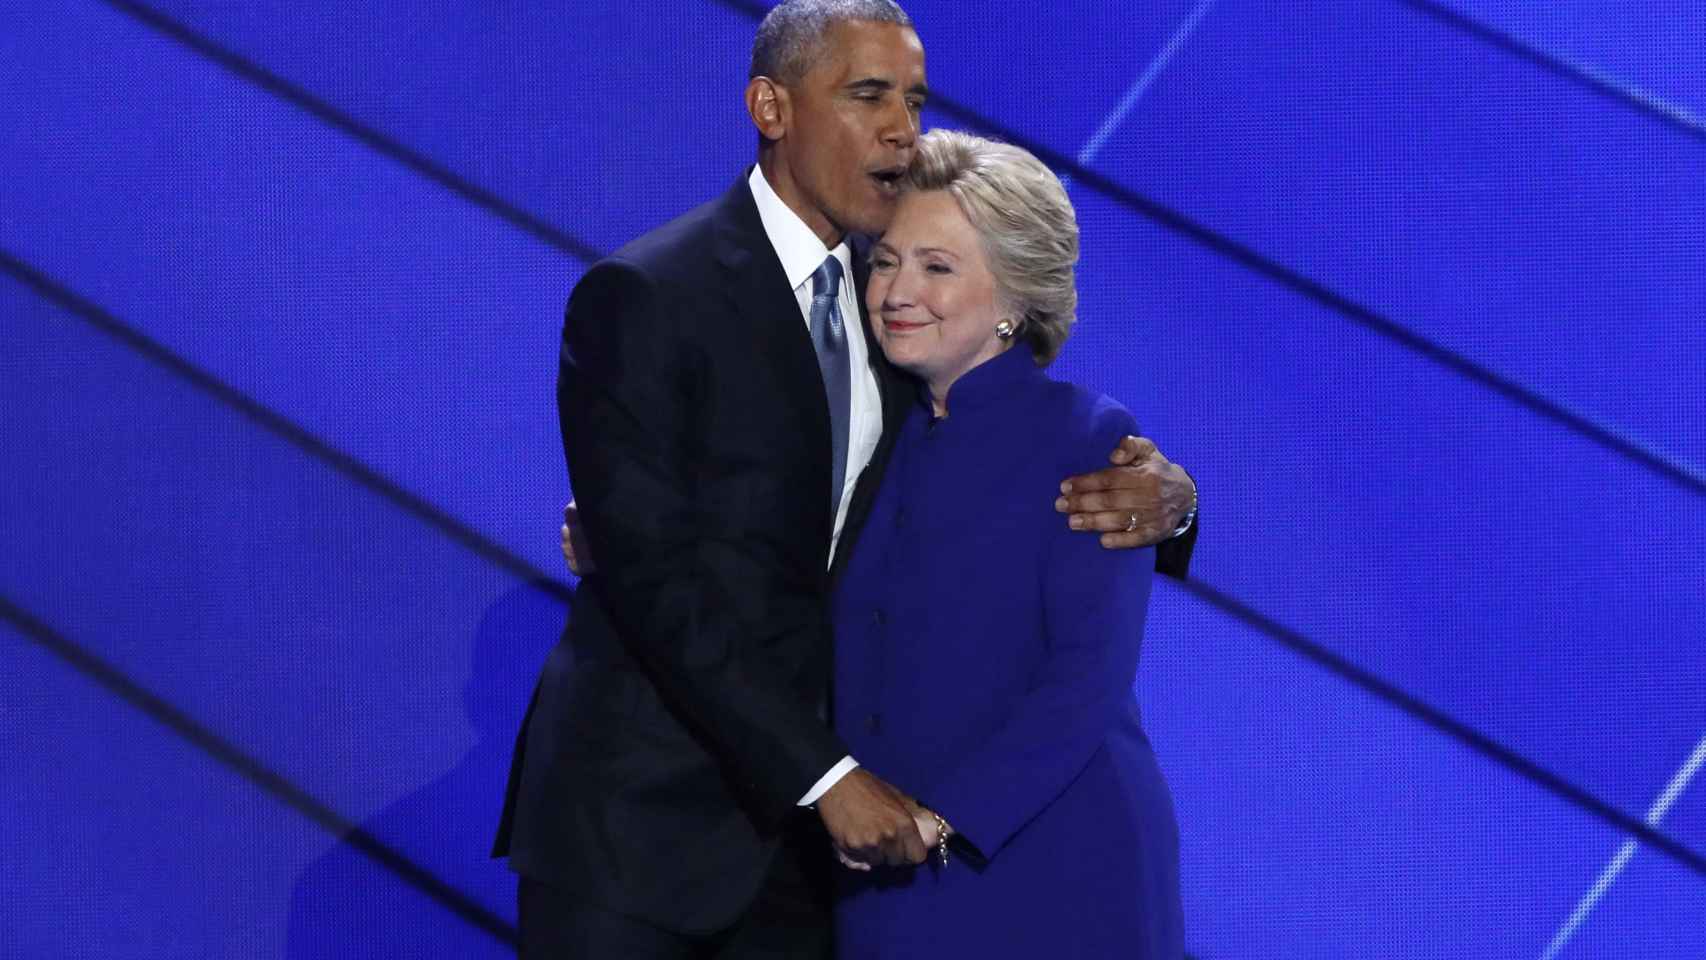 Obama abraza a Clinton durante la Convención nacional Demócrata.